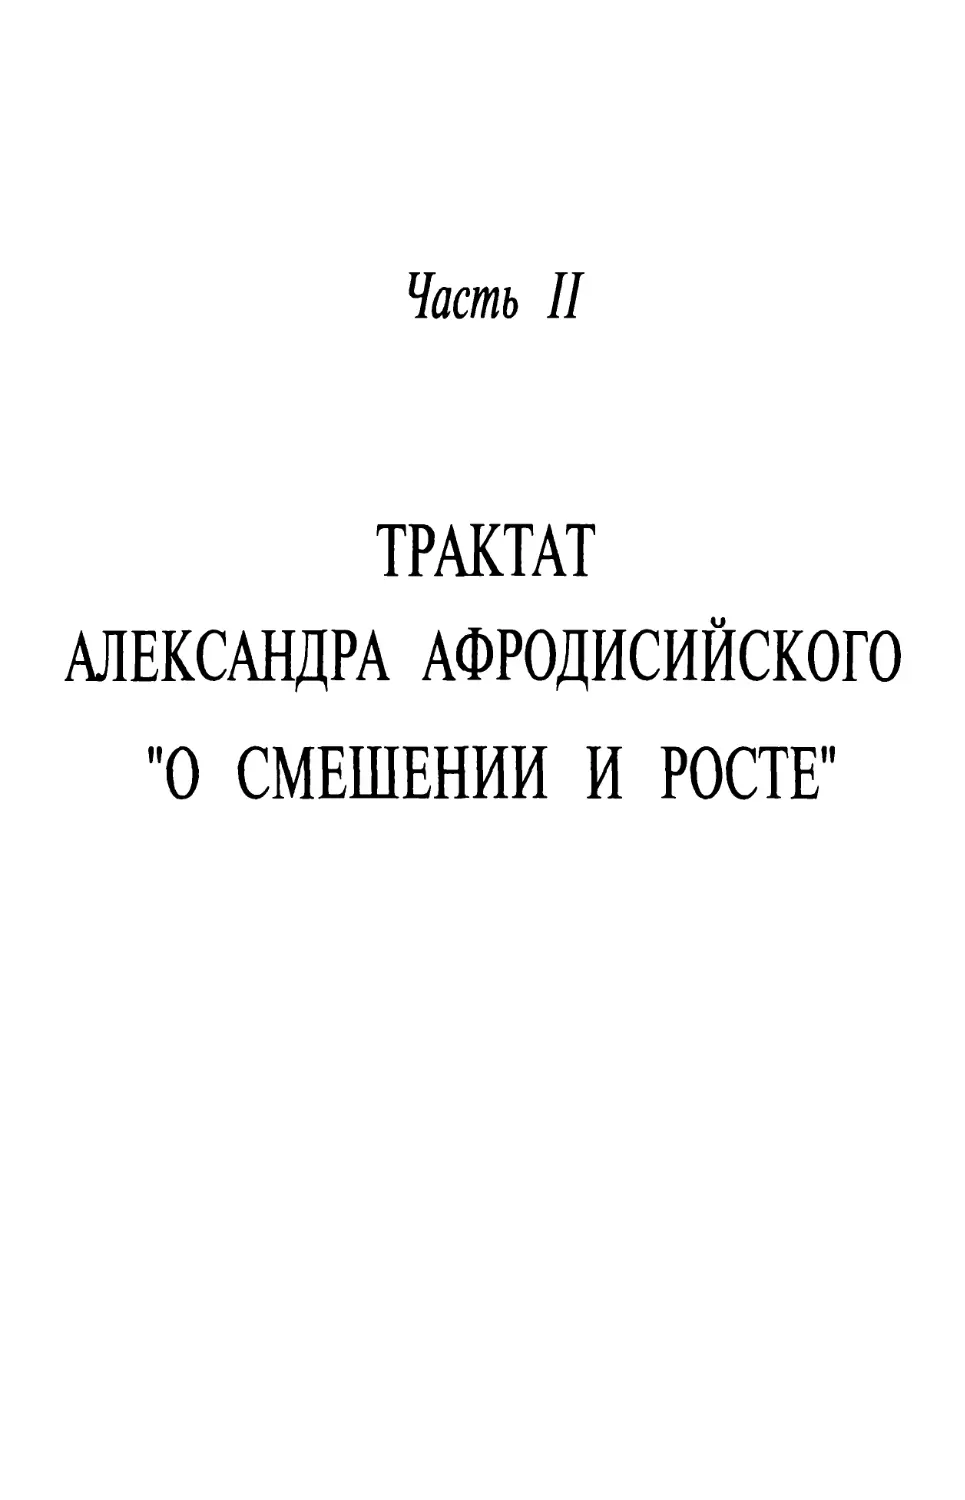 ЧАСТЬ II. Трактат Александра Афродисийского «О смешении и росте»